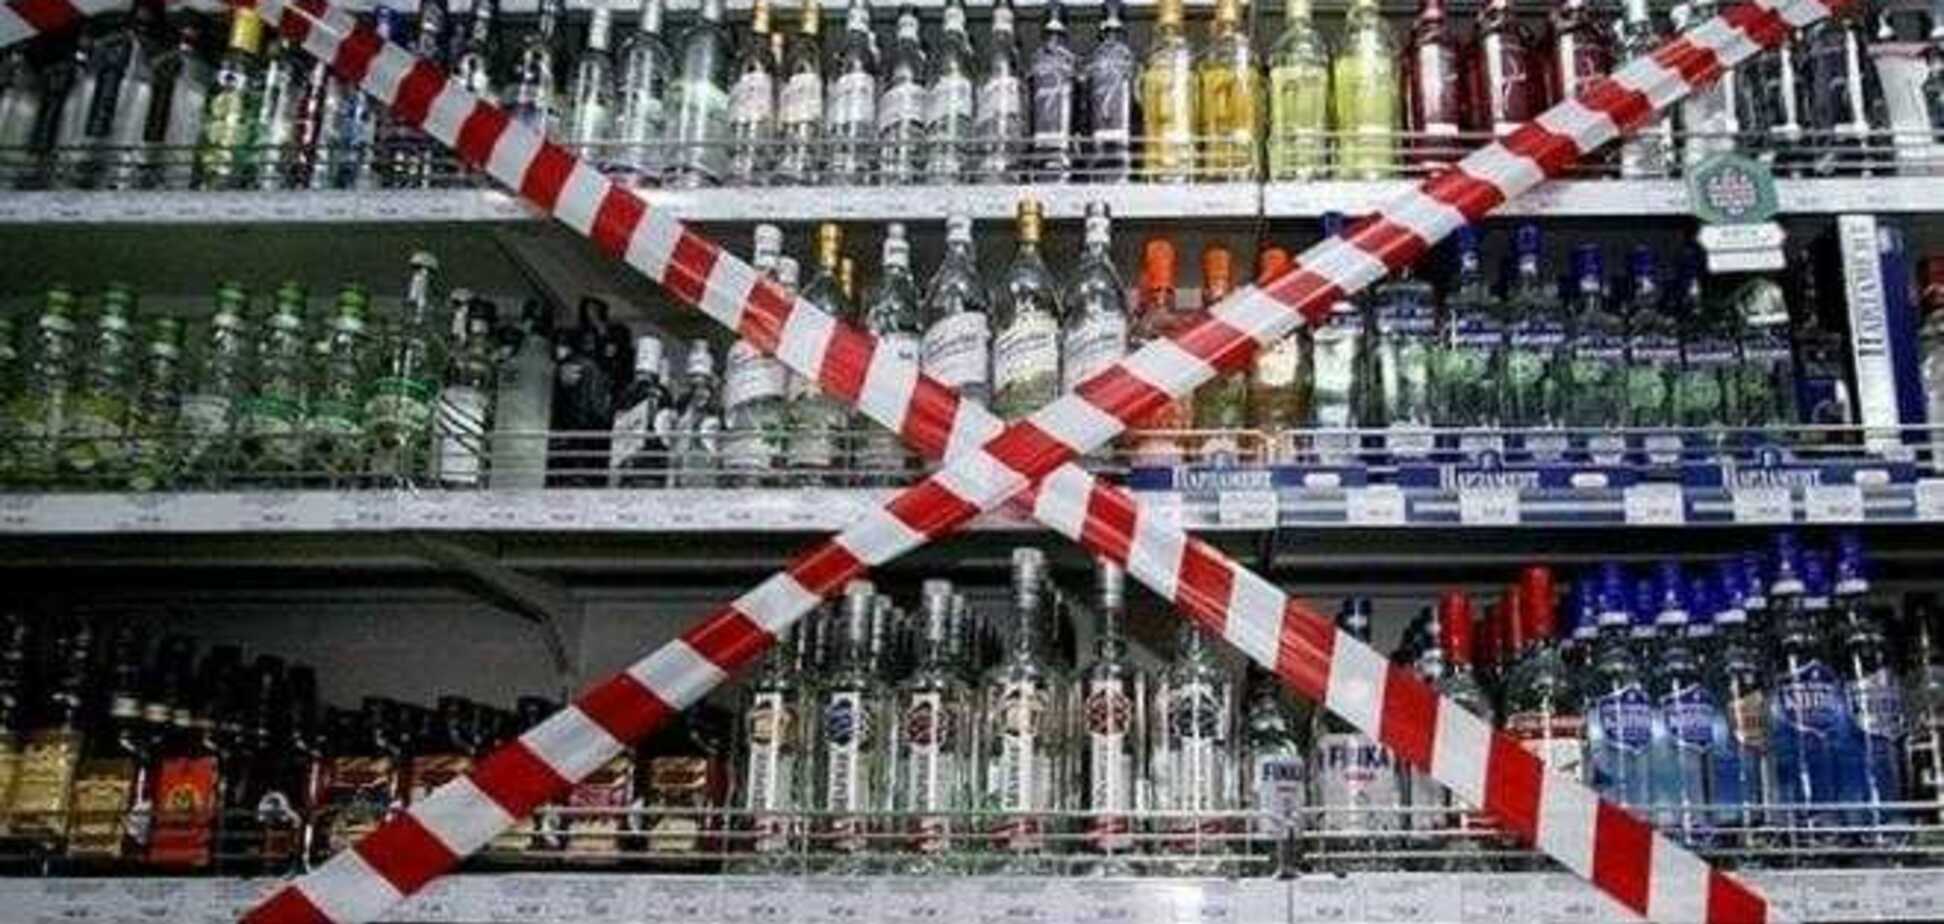 Продажу алкоголя и табака в Украине предлагают еще больше ограничить